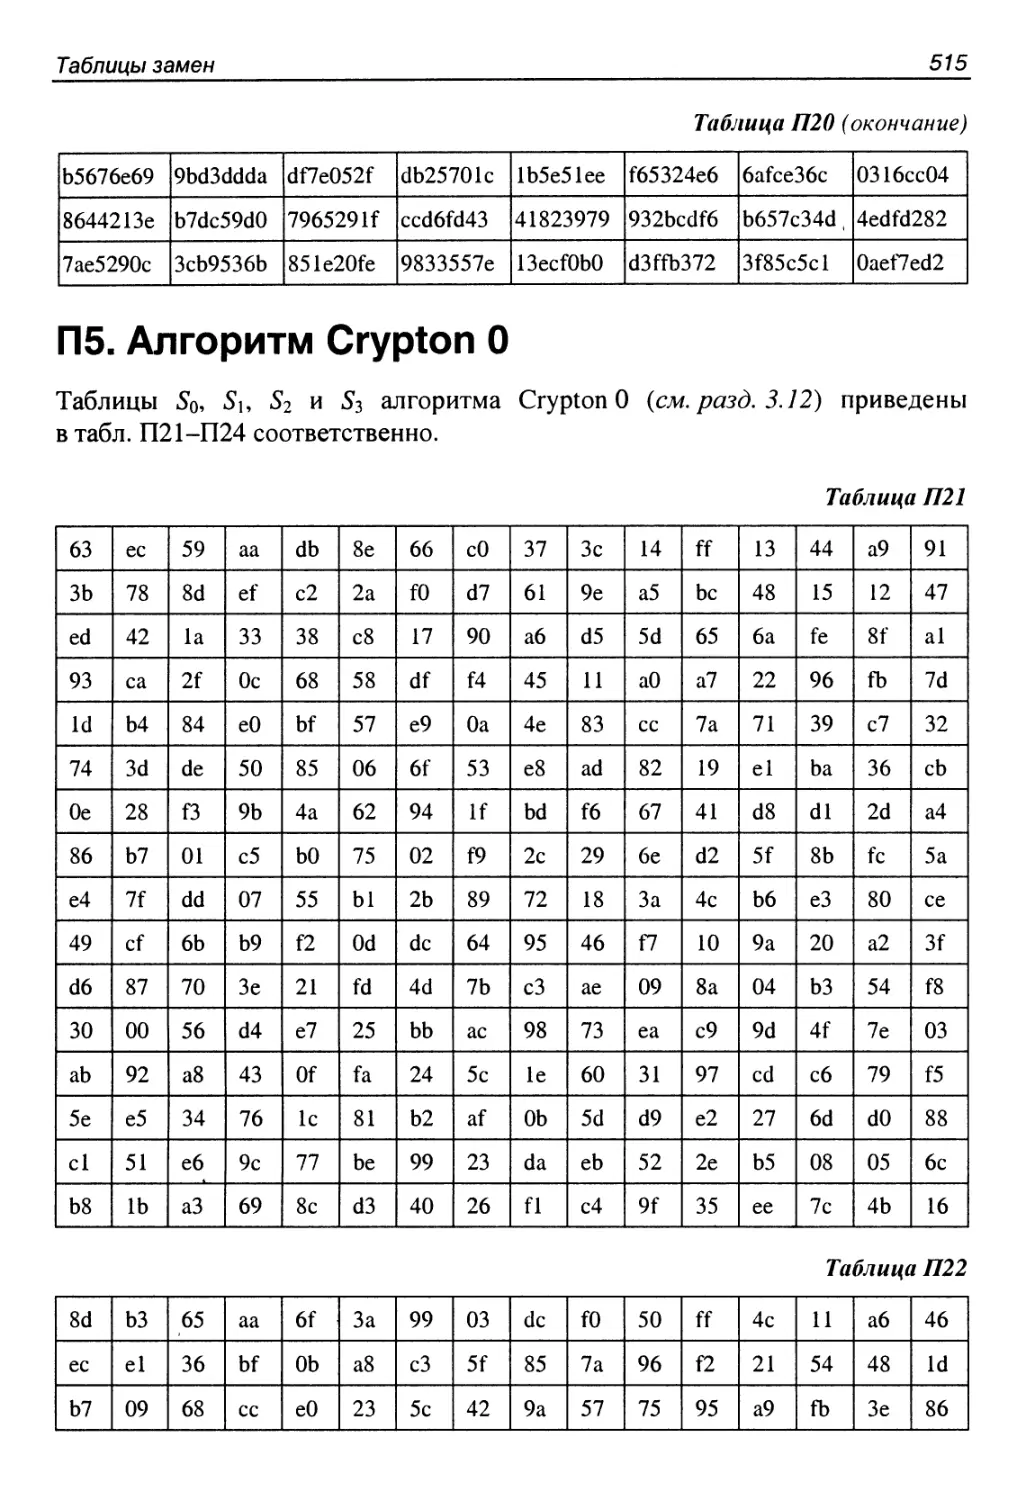 П5. Алгоритм CryptonO